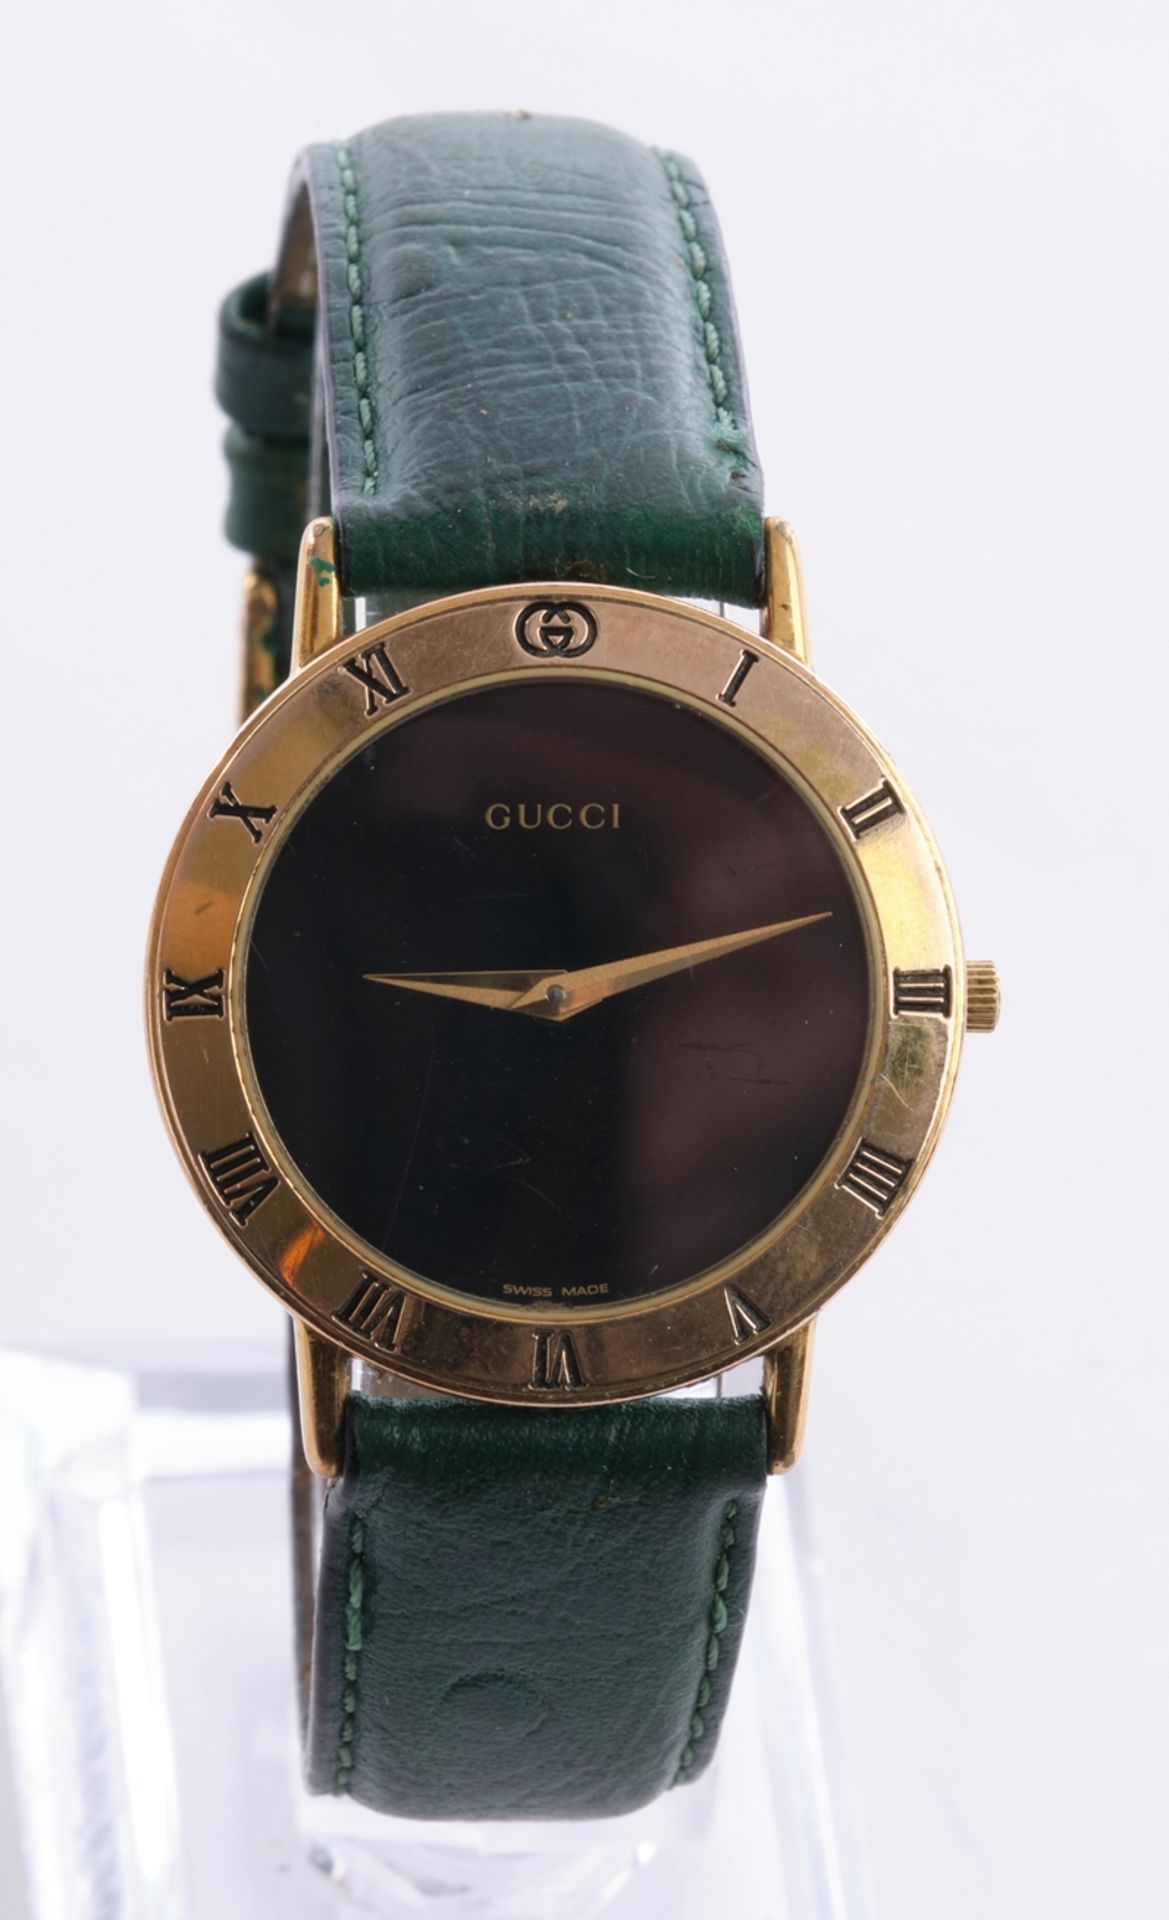 Gucci, Herrenarmbanduhr Ref. 3000.2.11, Gehäuse vergoldet mit römischen Ziffern, grünes Lederarmban